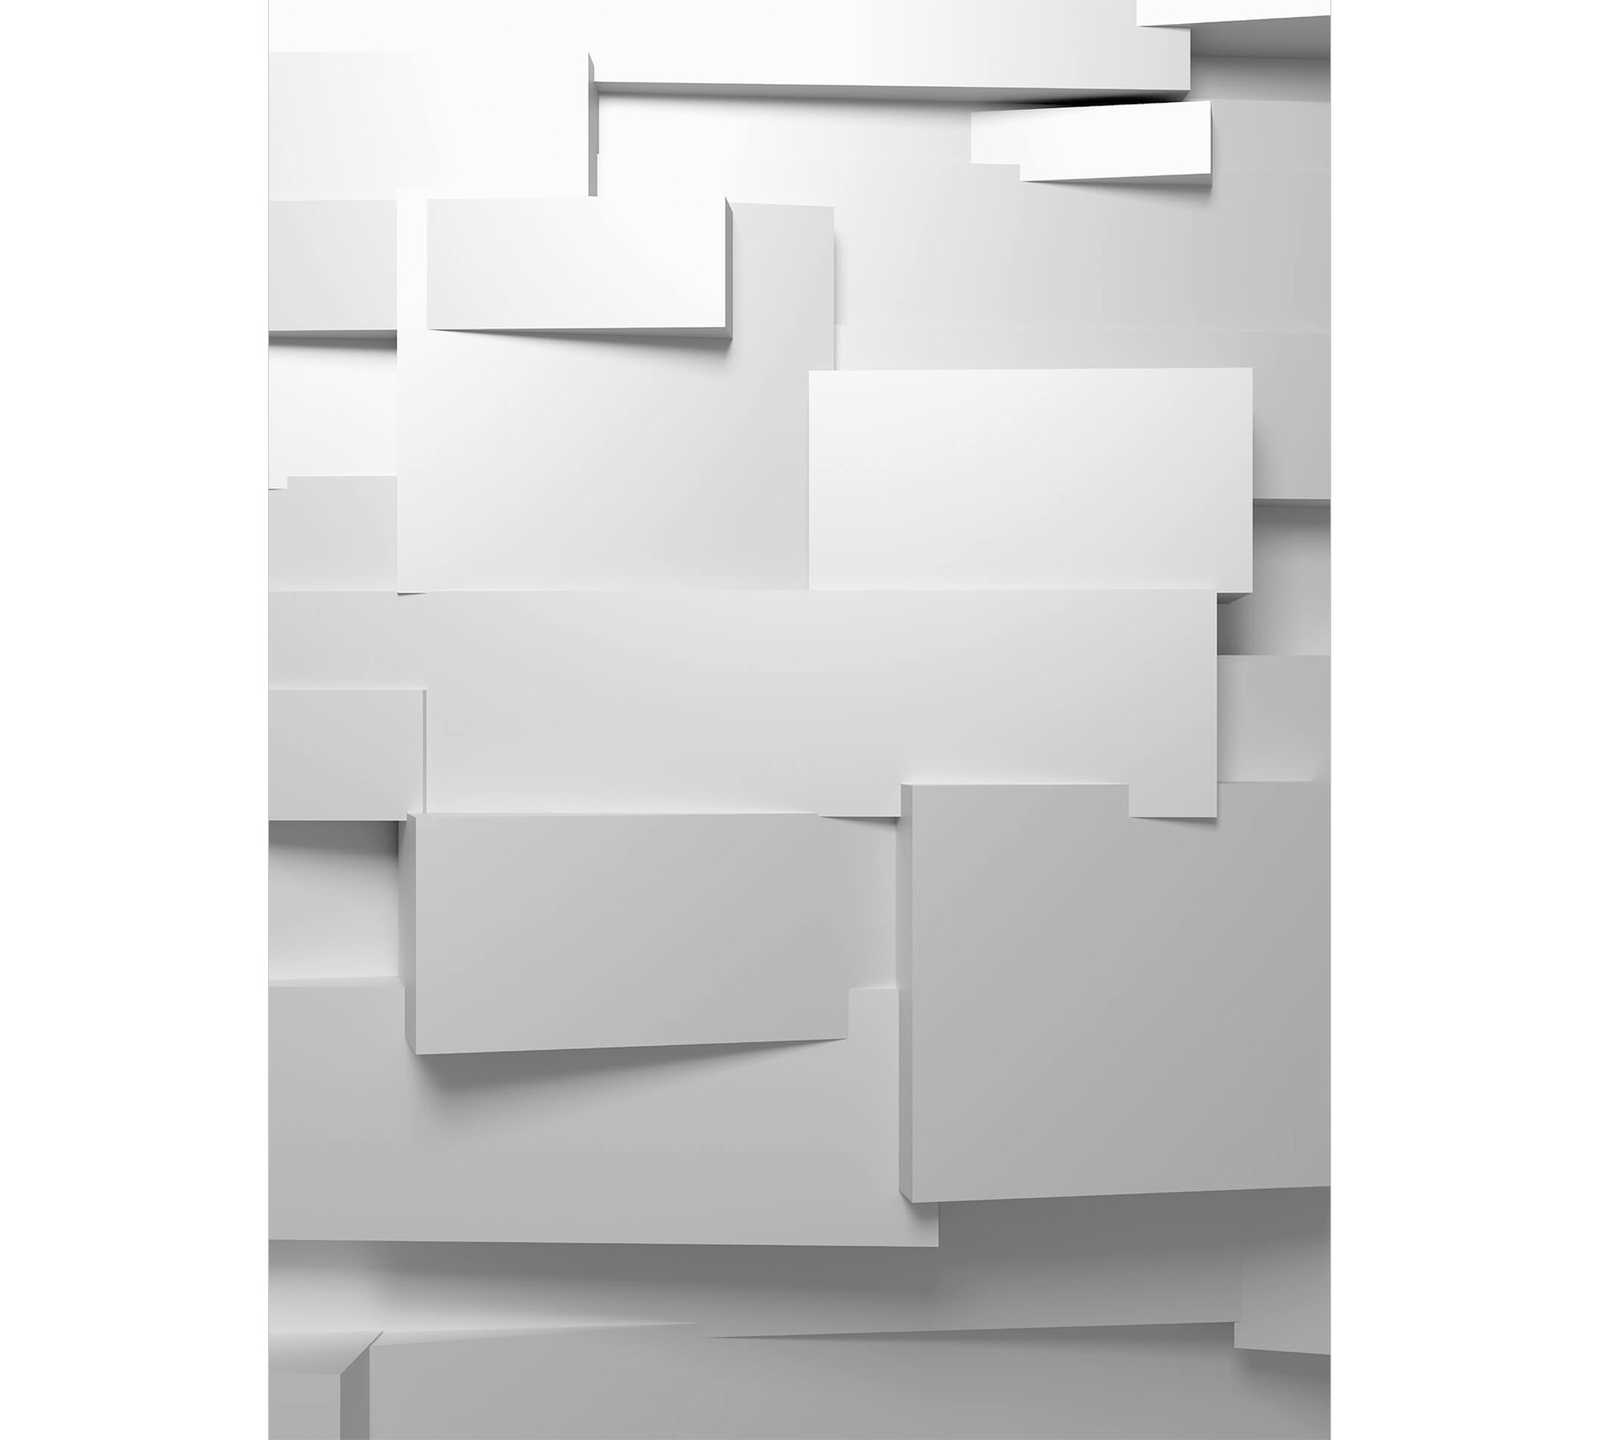 Muurschildering 3D Grafisch effect, staand formaat - grijs-wit
